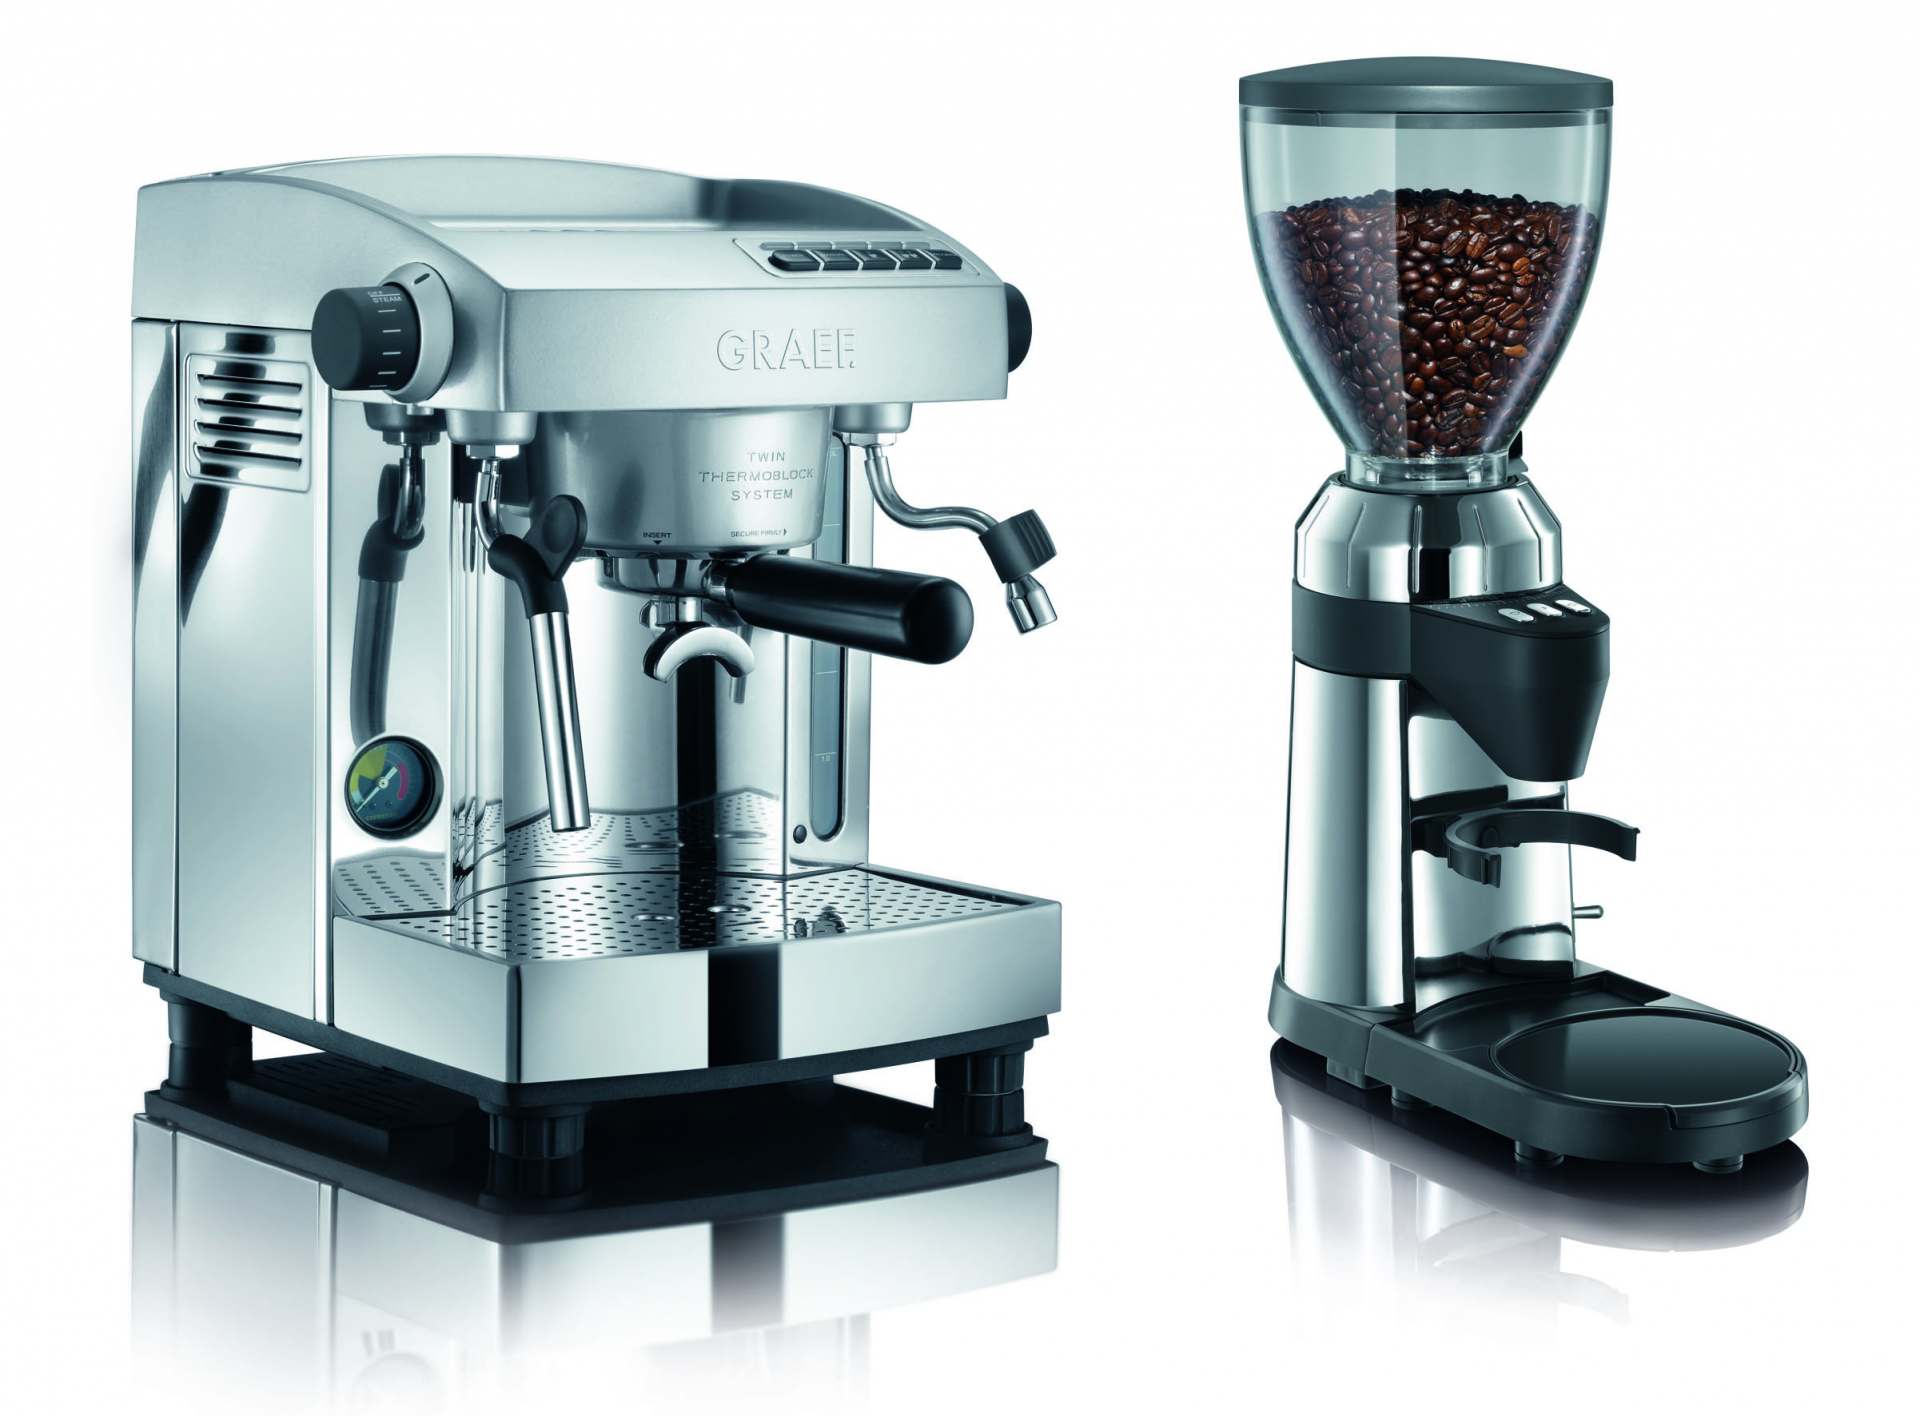 Graef ES 95 Espressomaschine: Ein Profi für den Haushalt